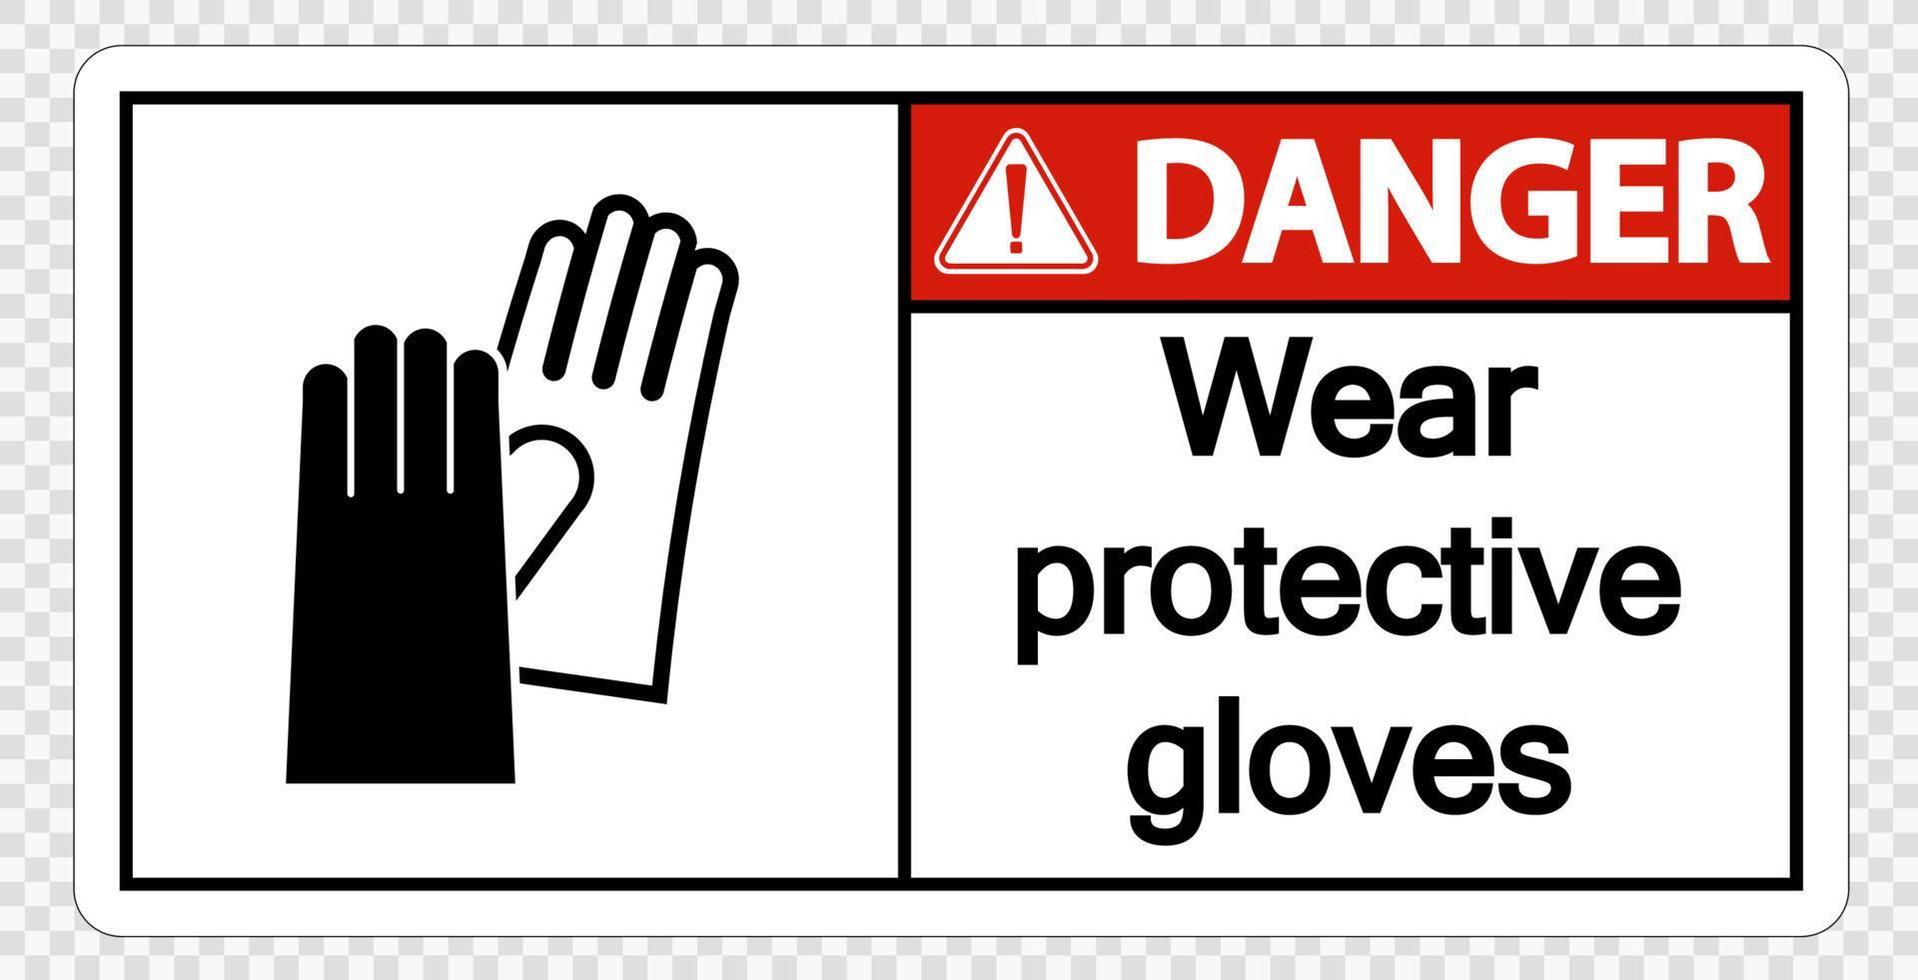 gevaar draag beschermende handschoenen ondertekenen op transparante achtergrond vector